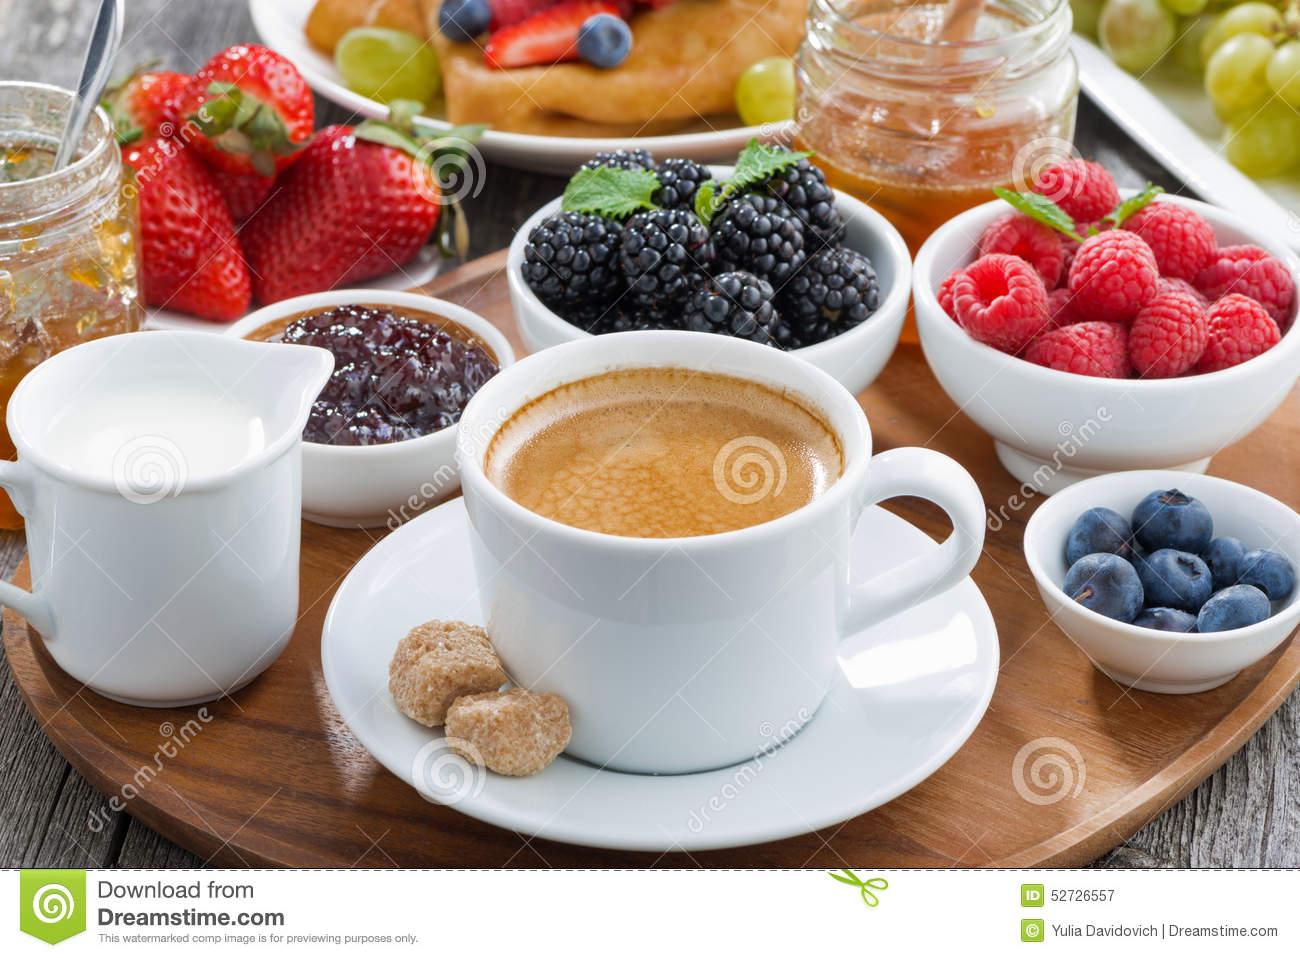 delicious-breakfast-coffee-fresh-berries-pancakes-horizontal-52726557.jpg